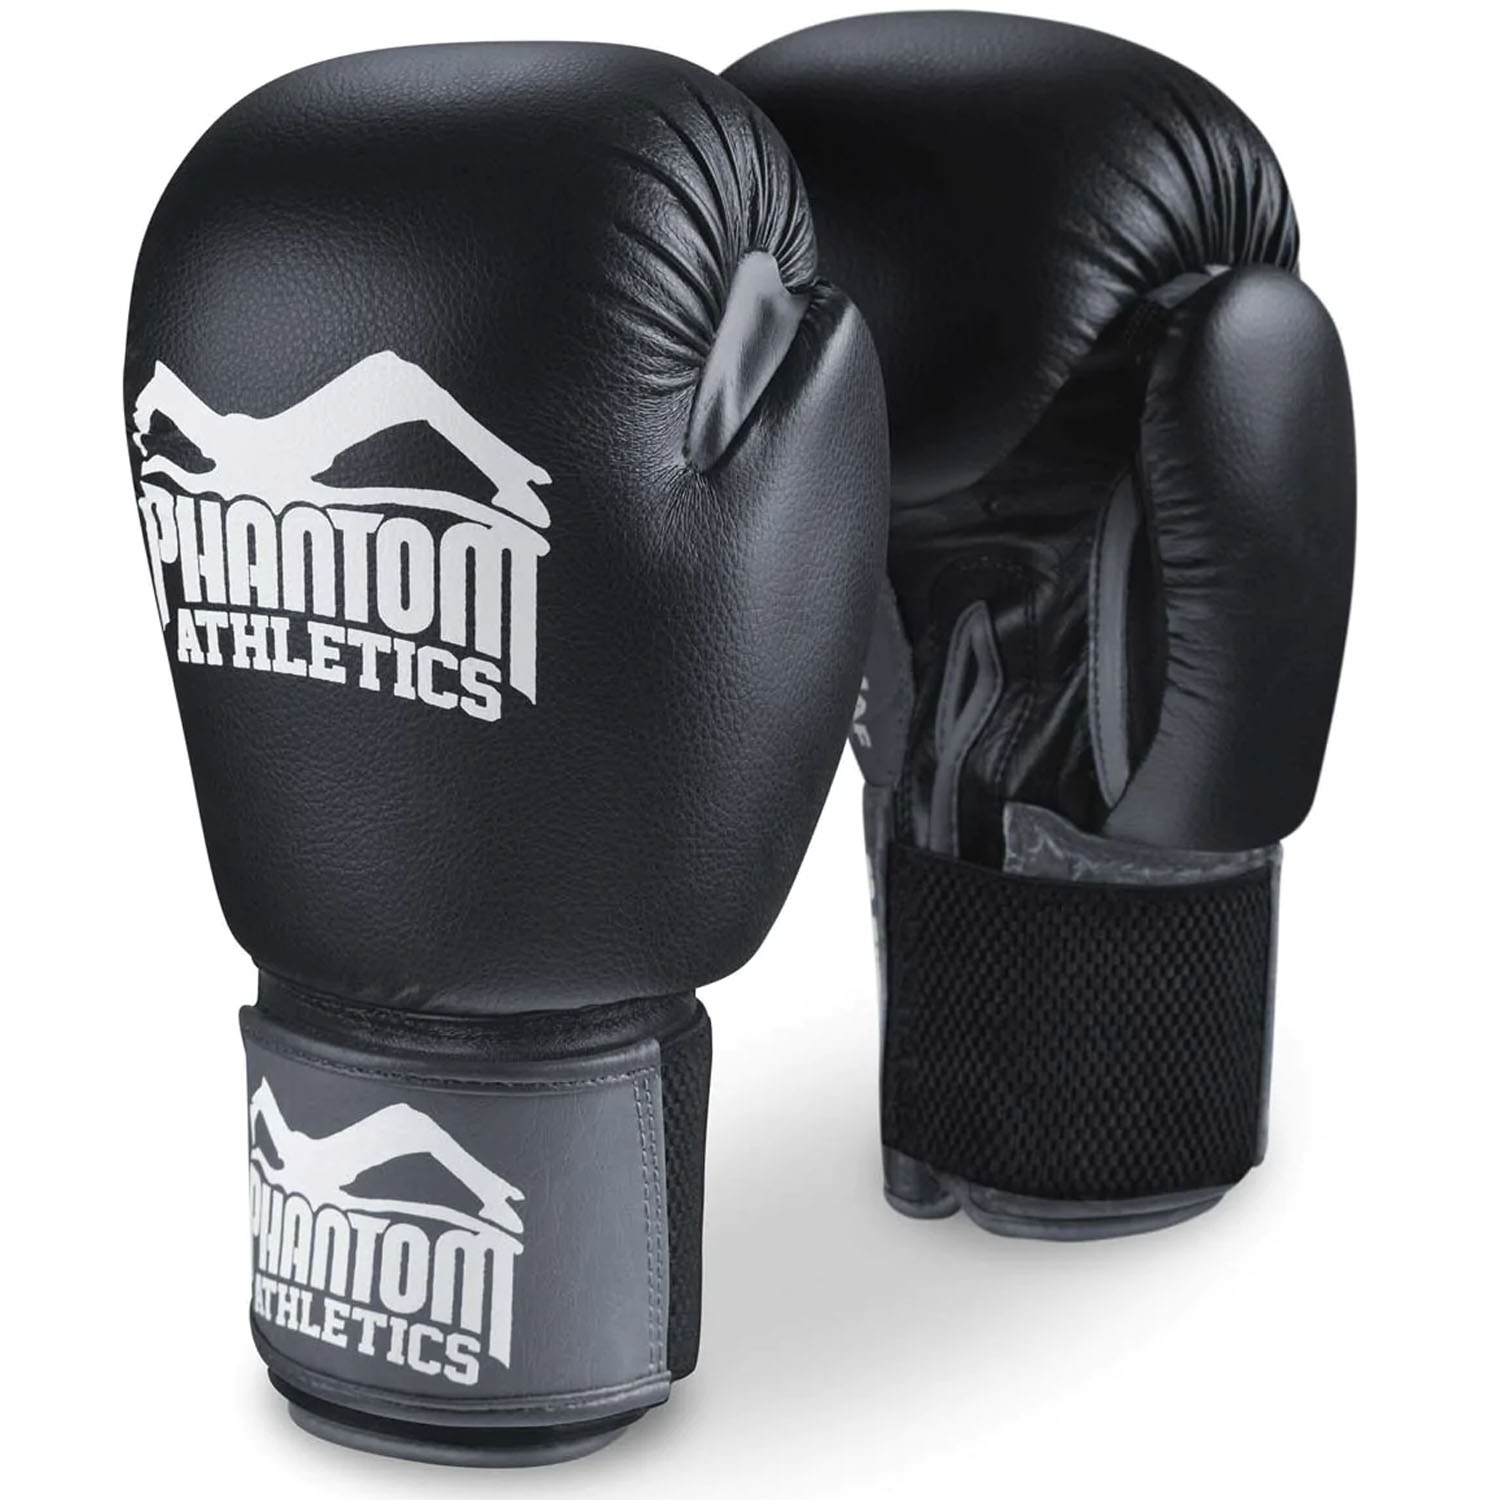 Phantom Athletics Boxhandschuhe, Ultra, schwarz